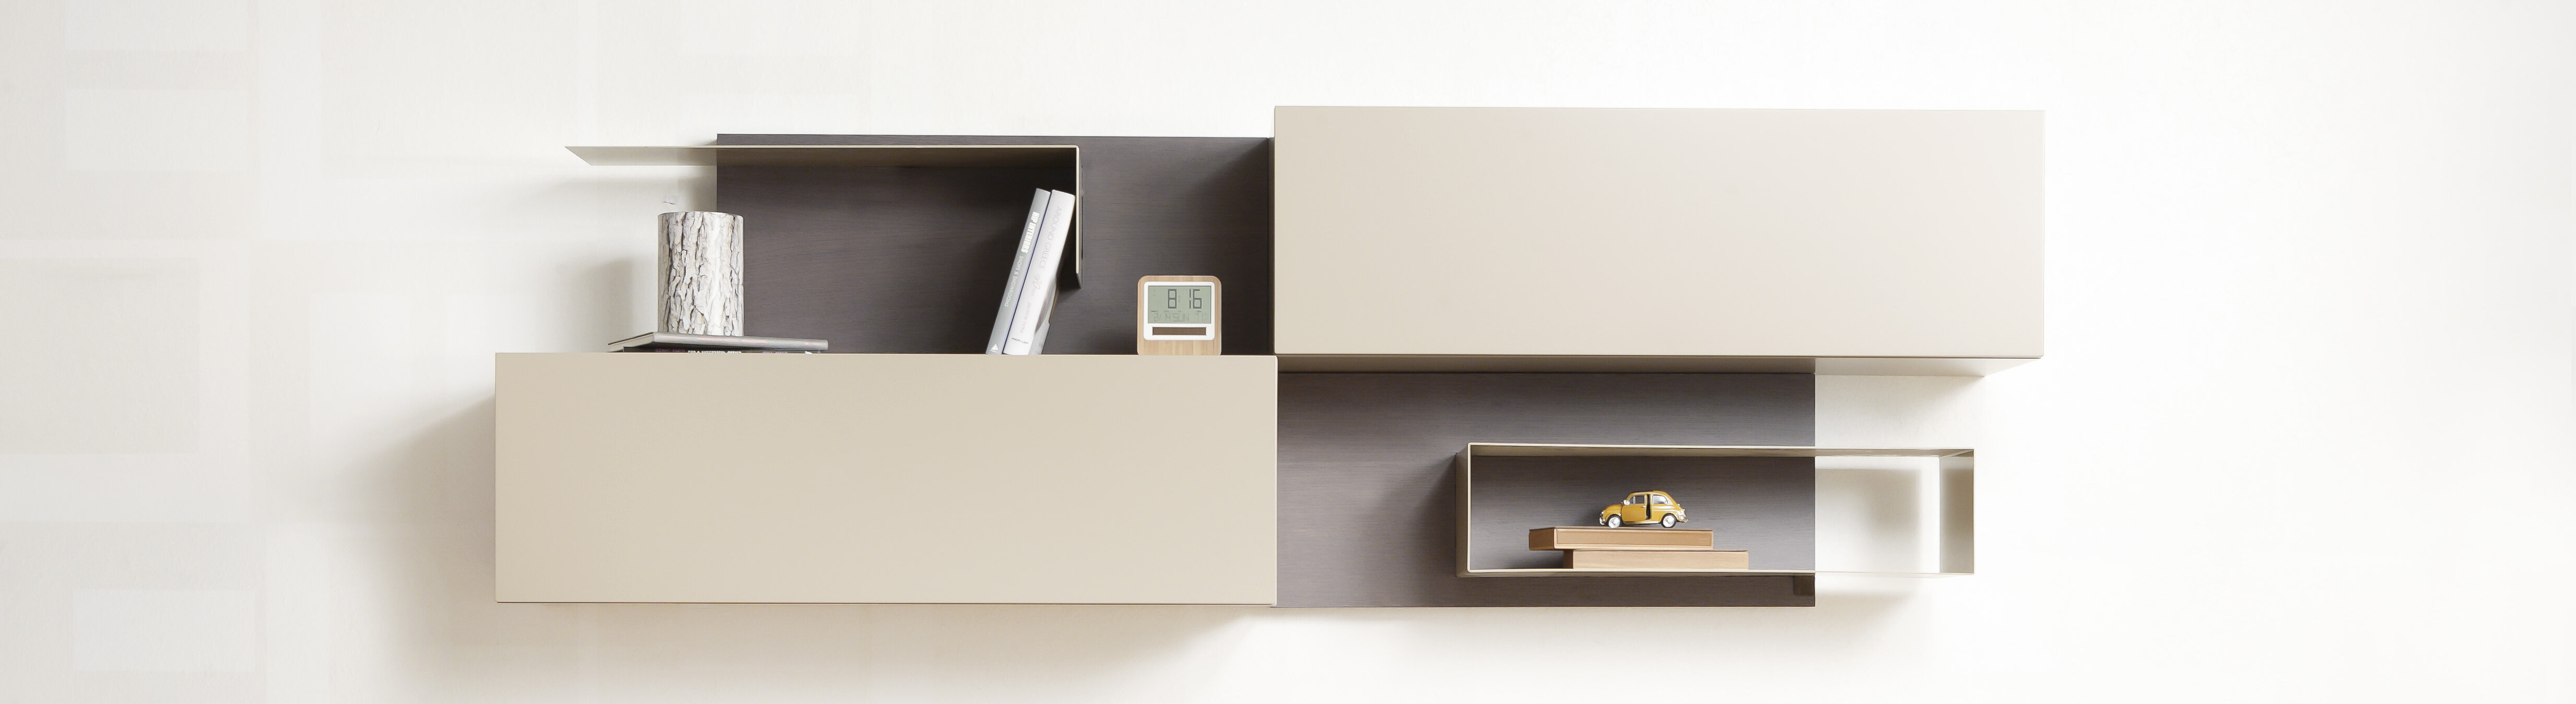 Beige/graue Wohnwand mit Sideboard und Regal. Behandelt mit Pulverlack für qualitative Ästhetik | © Shutterstock